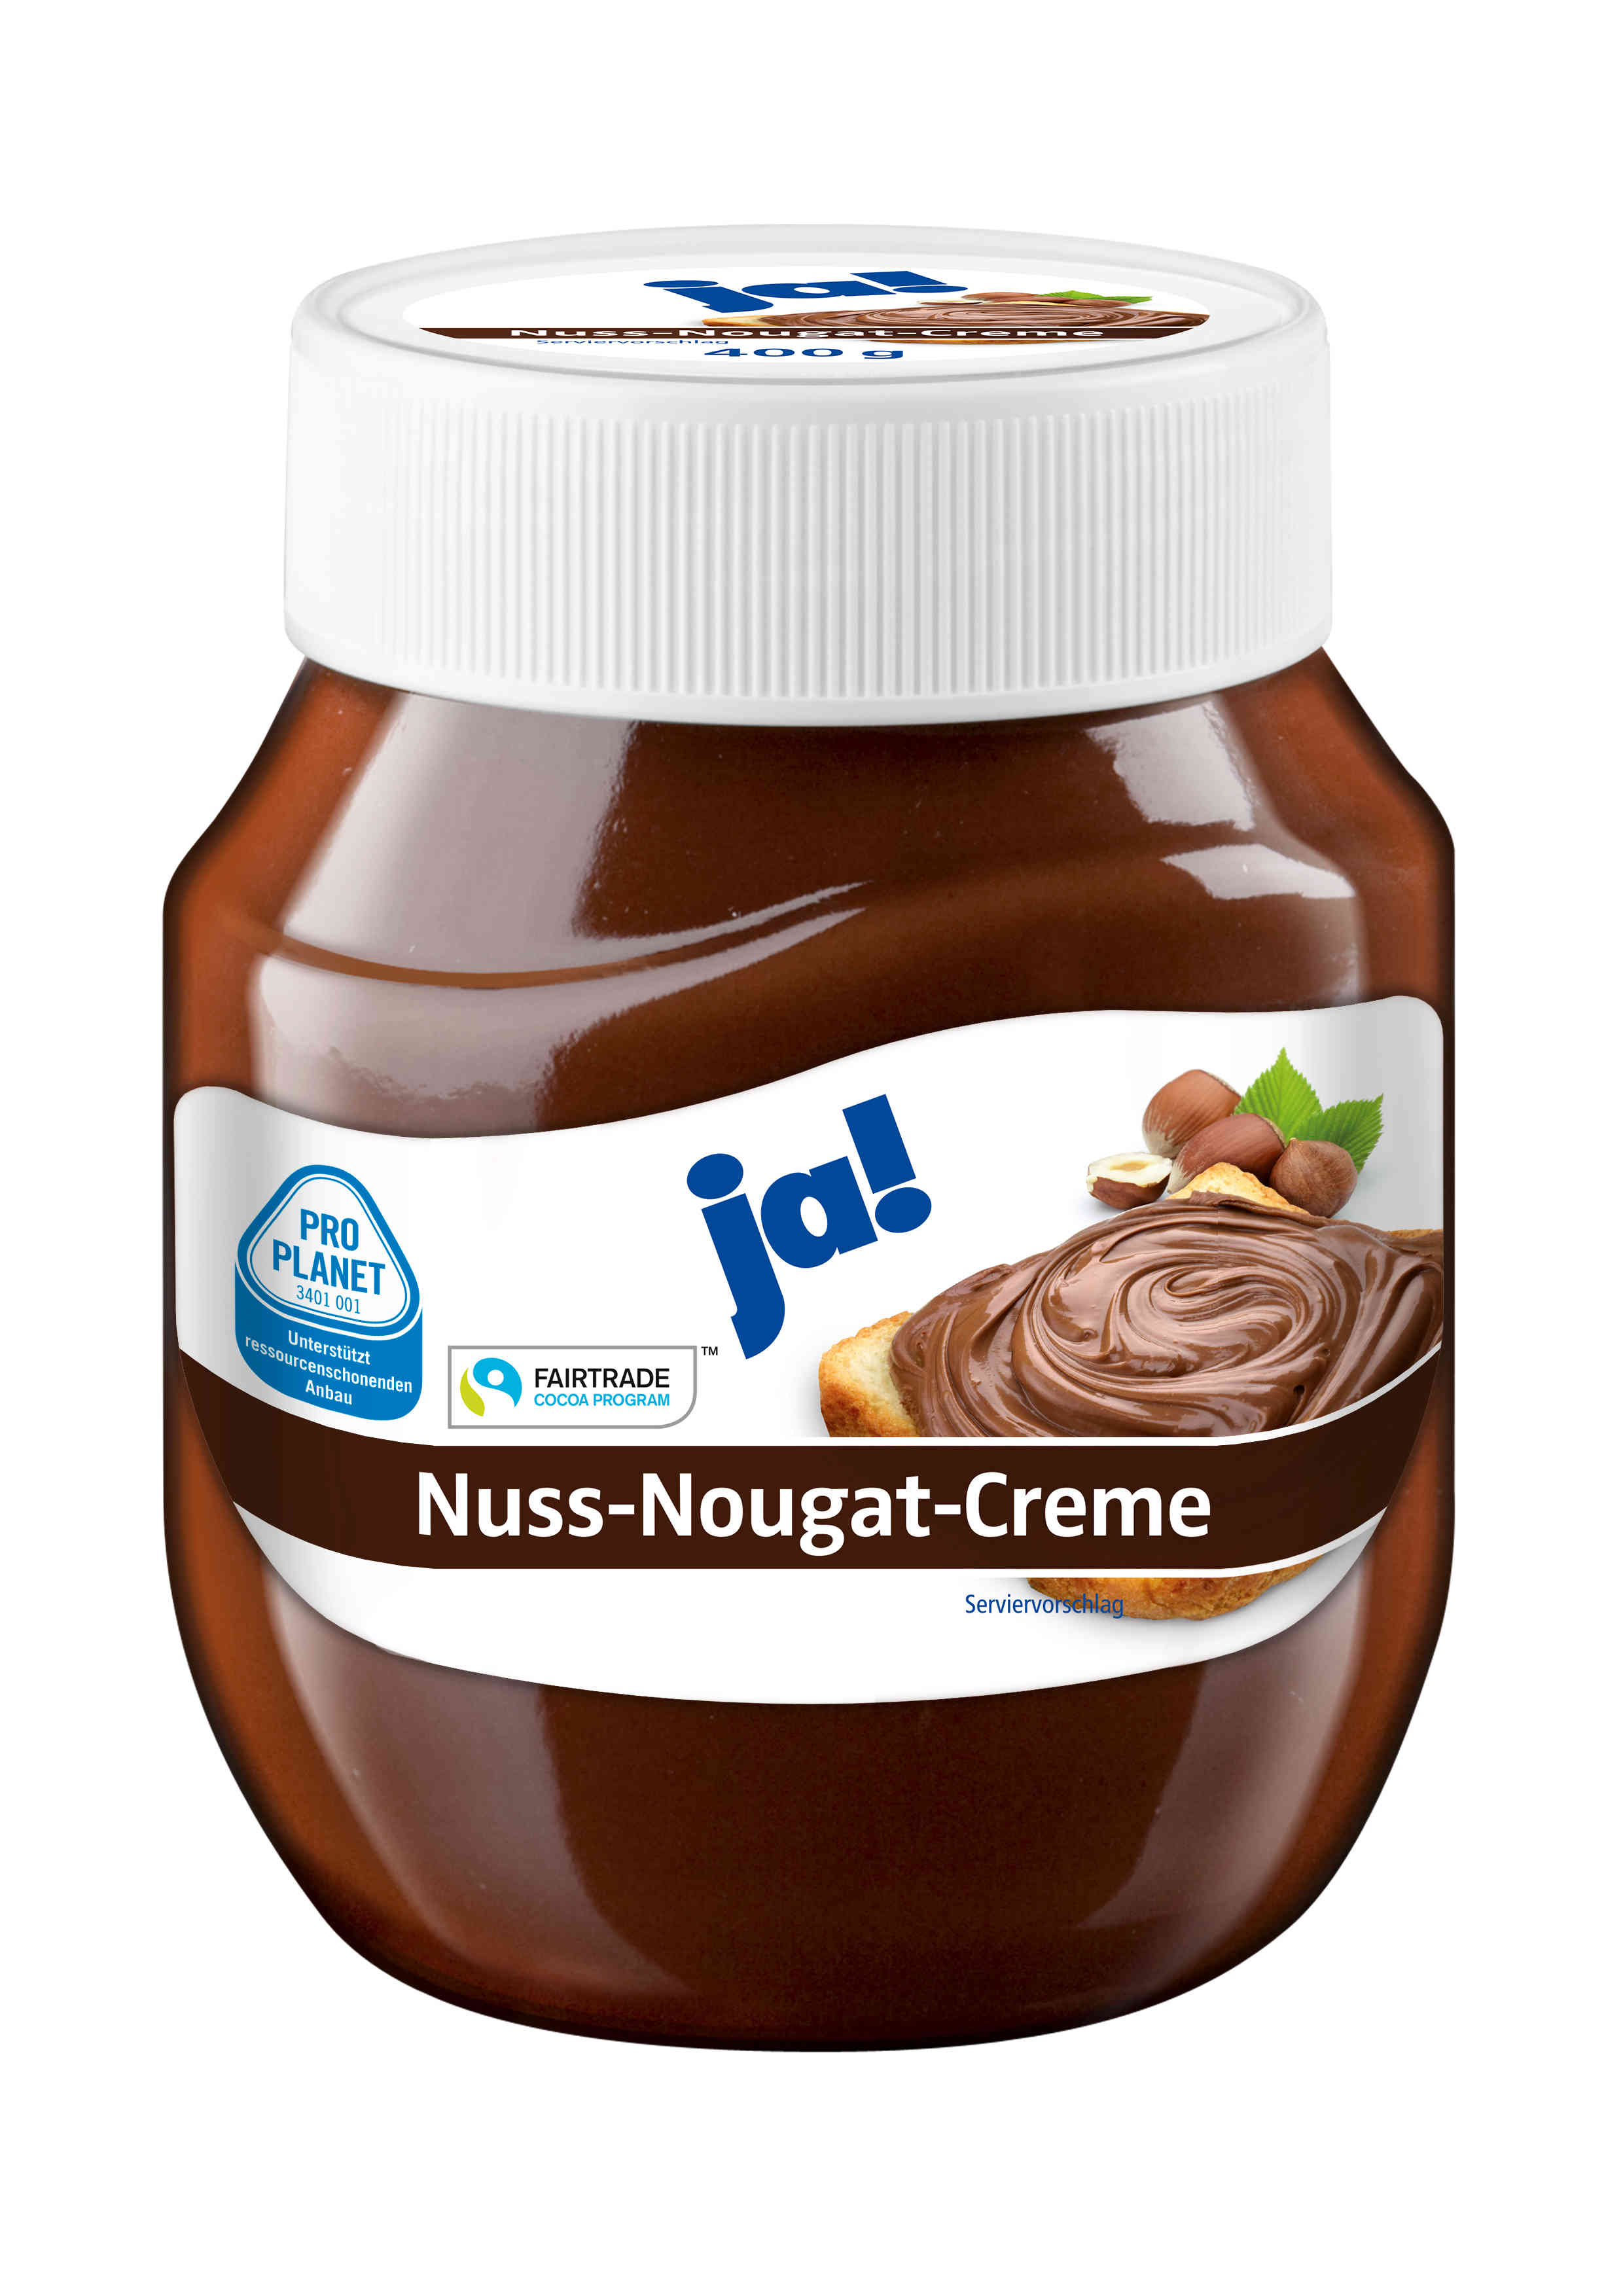 Nuss-Nougat-Crème